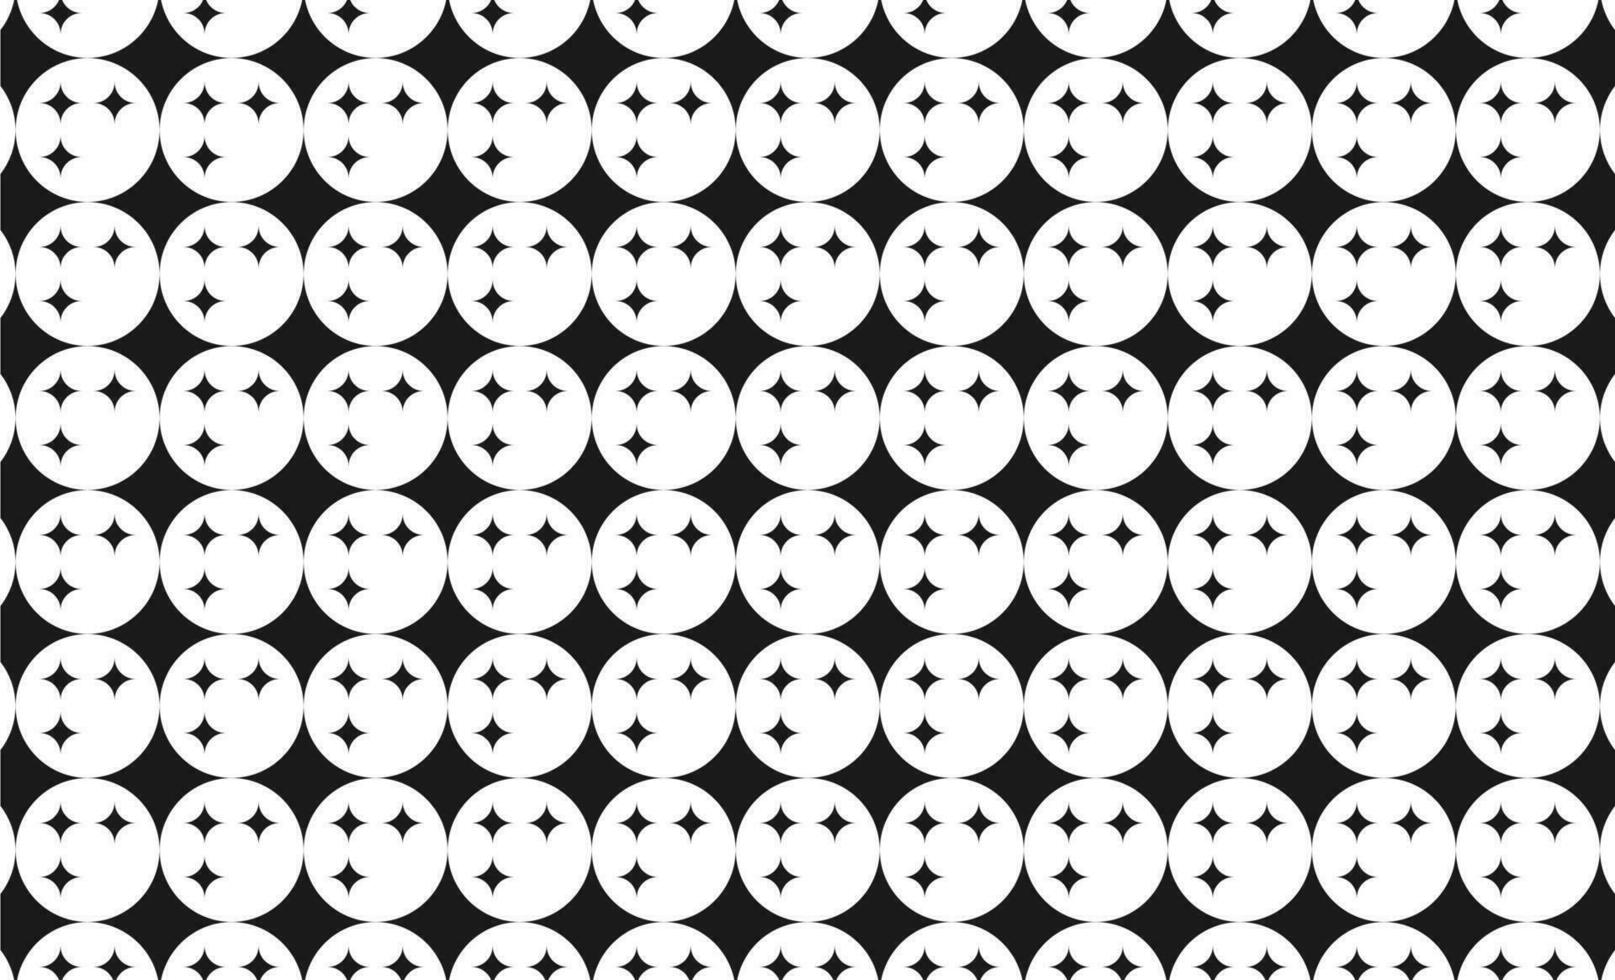 sömlös mönster bakgrund i svart och vit färger vektor